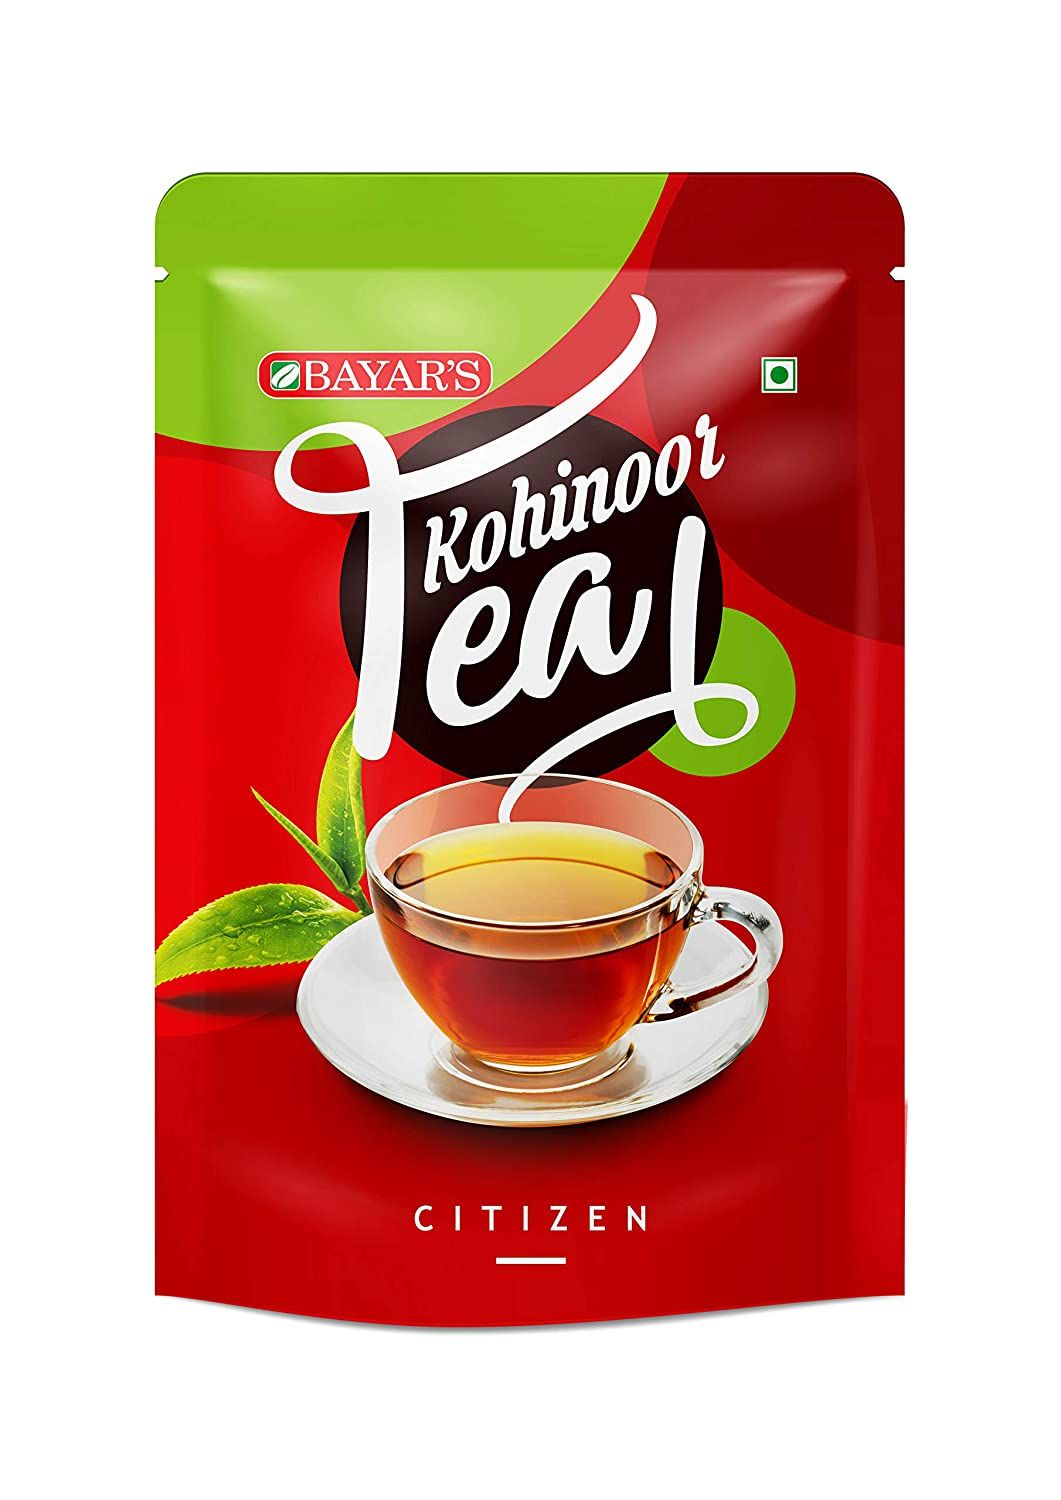 Bayar's Kohinoor Tea Image